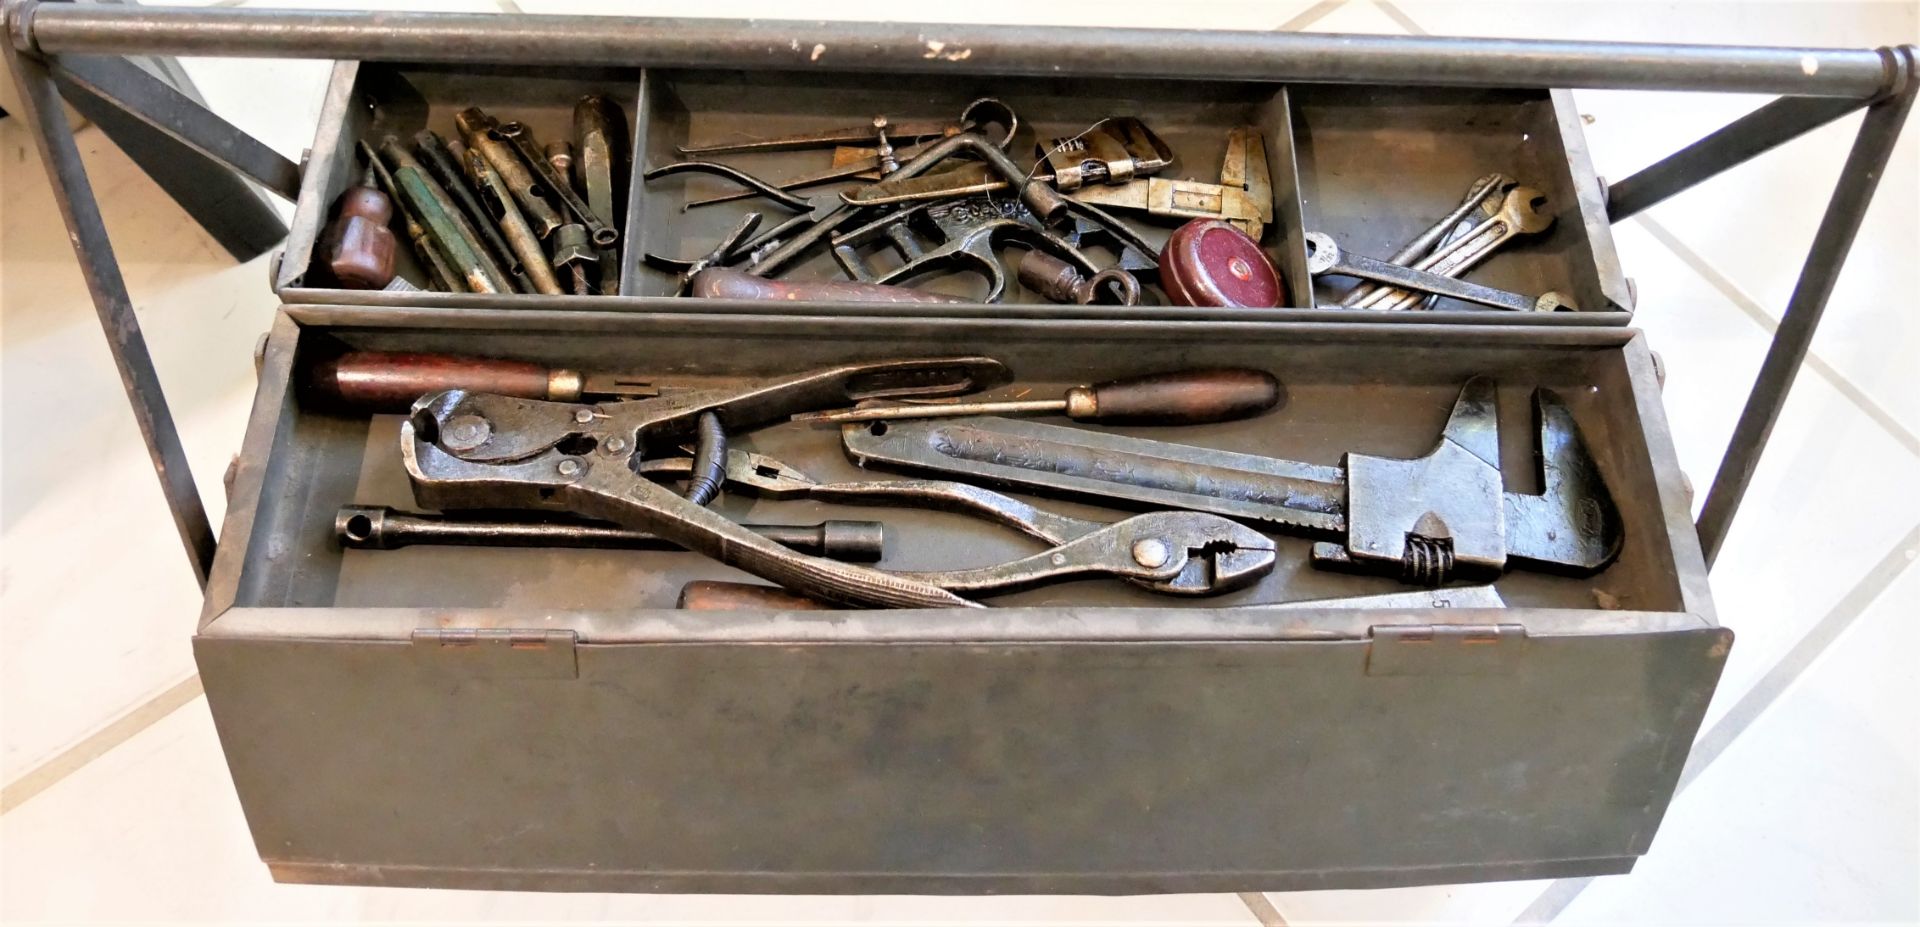 alter Werkzeugkasten gefüllt mit Werkzeugen. Verschiedene Teile, dabei Zangen, Schraubenzieher, etc.